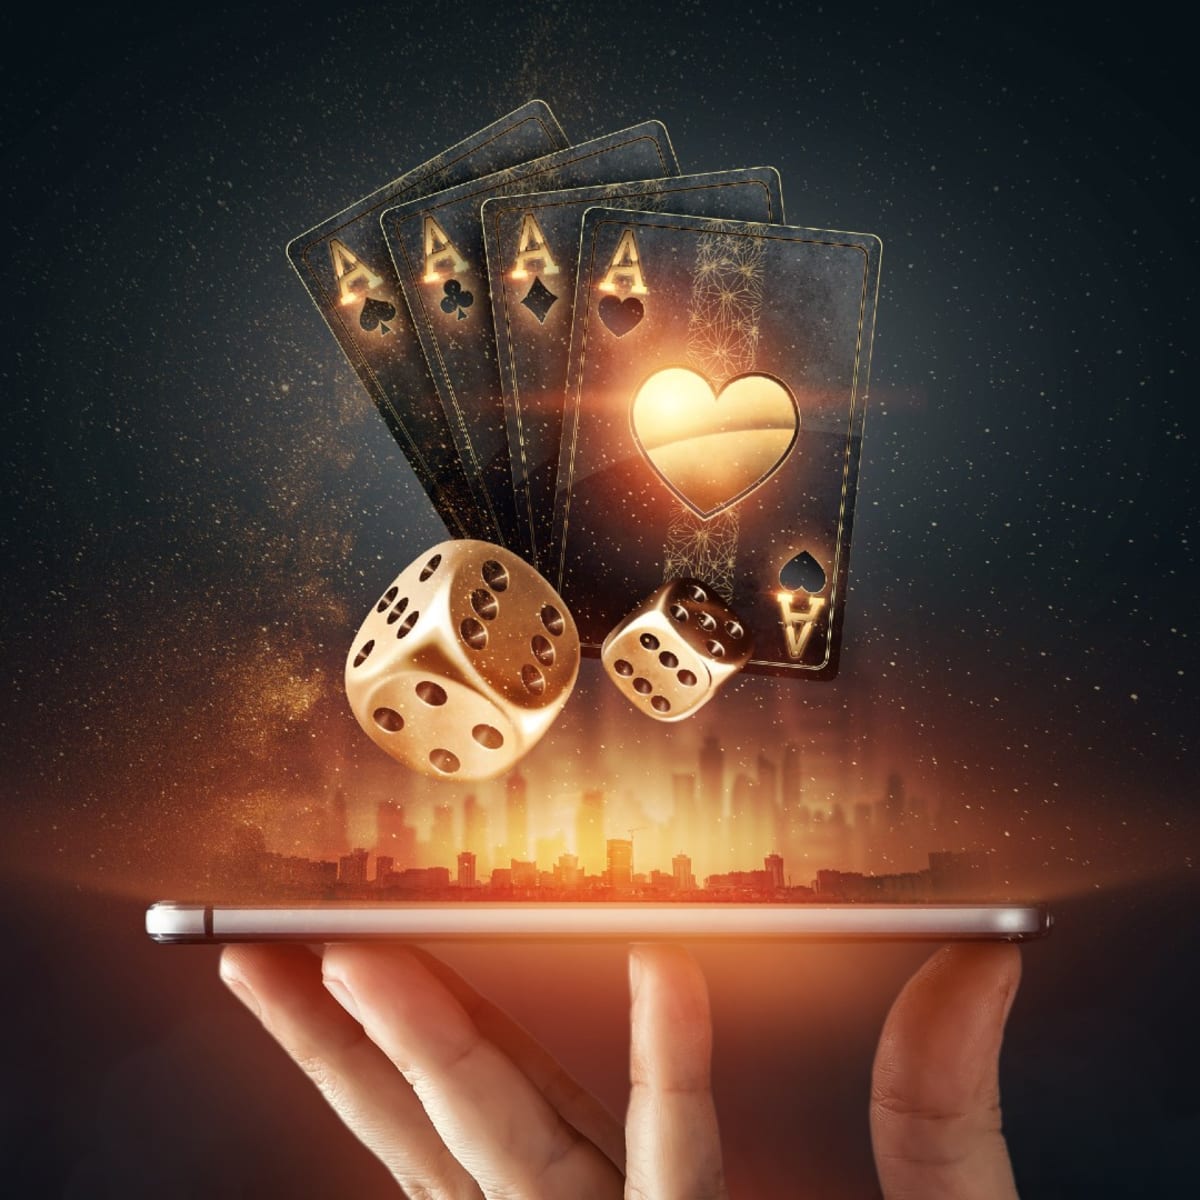 Make Your gamblingA Reality